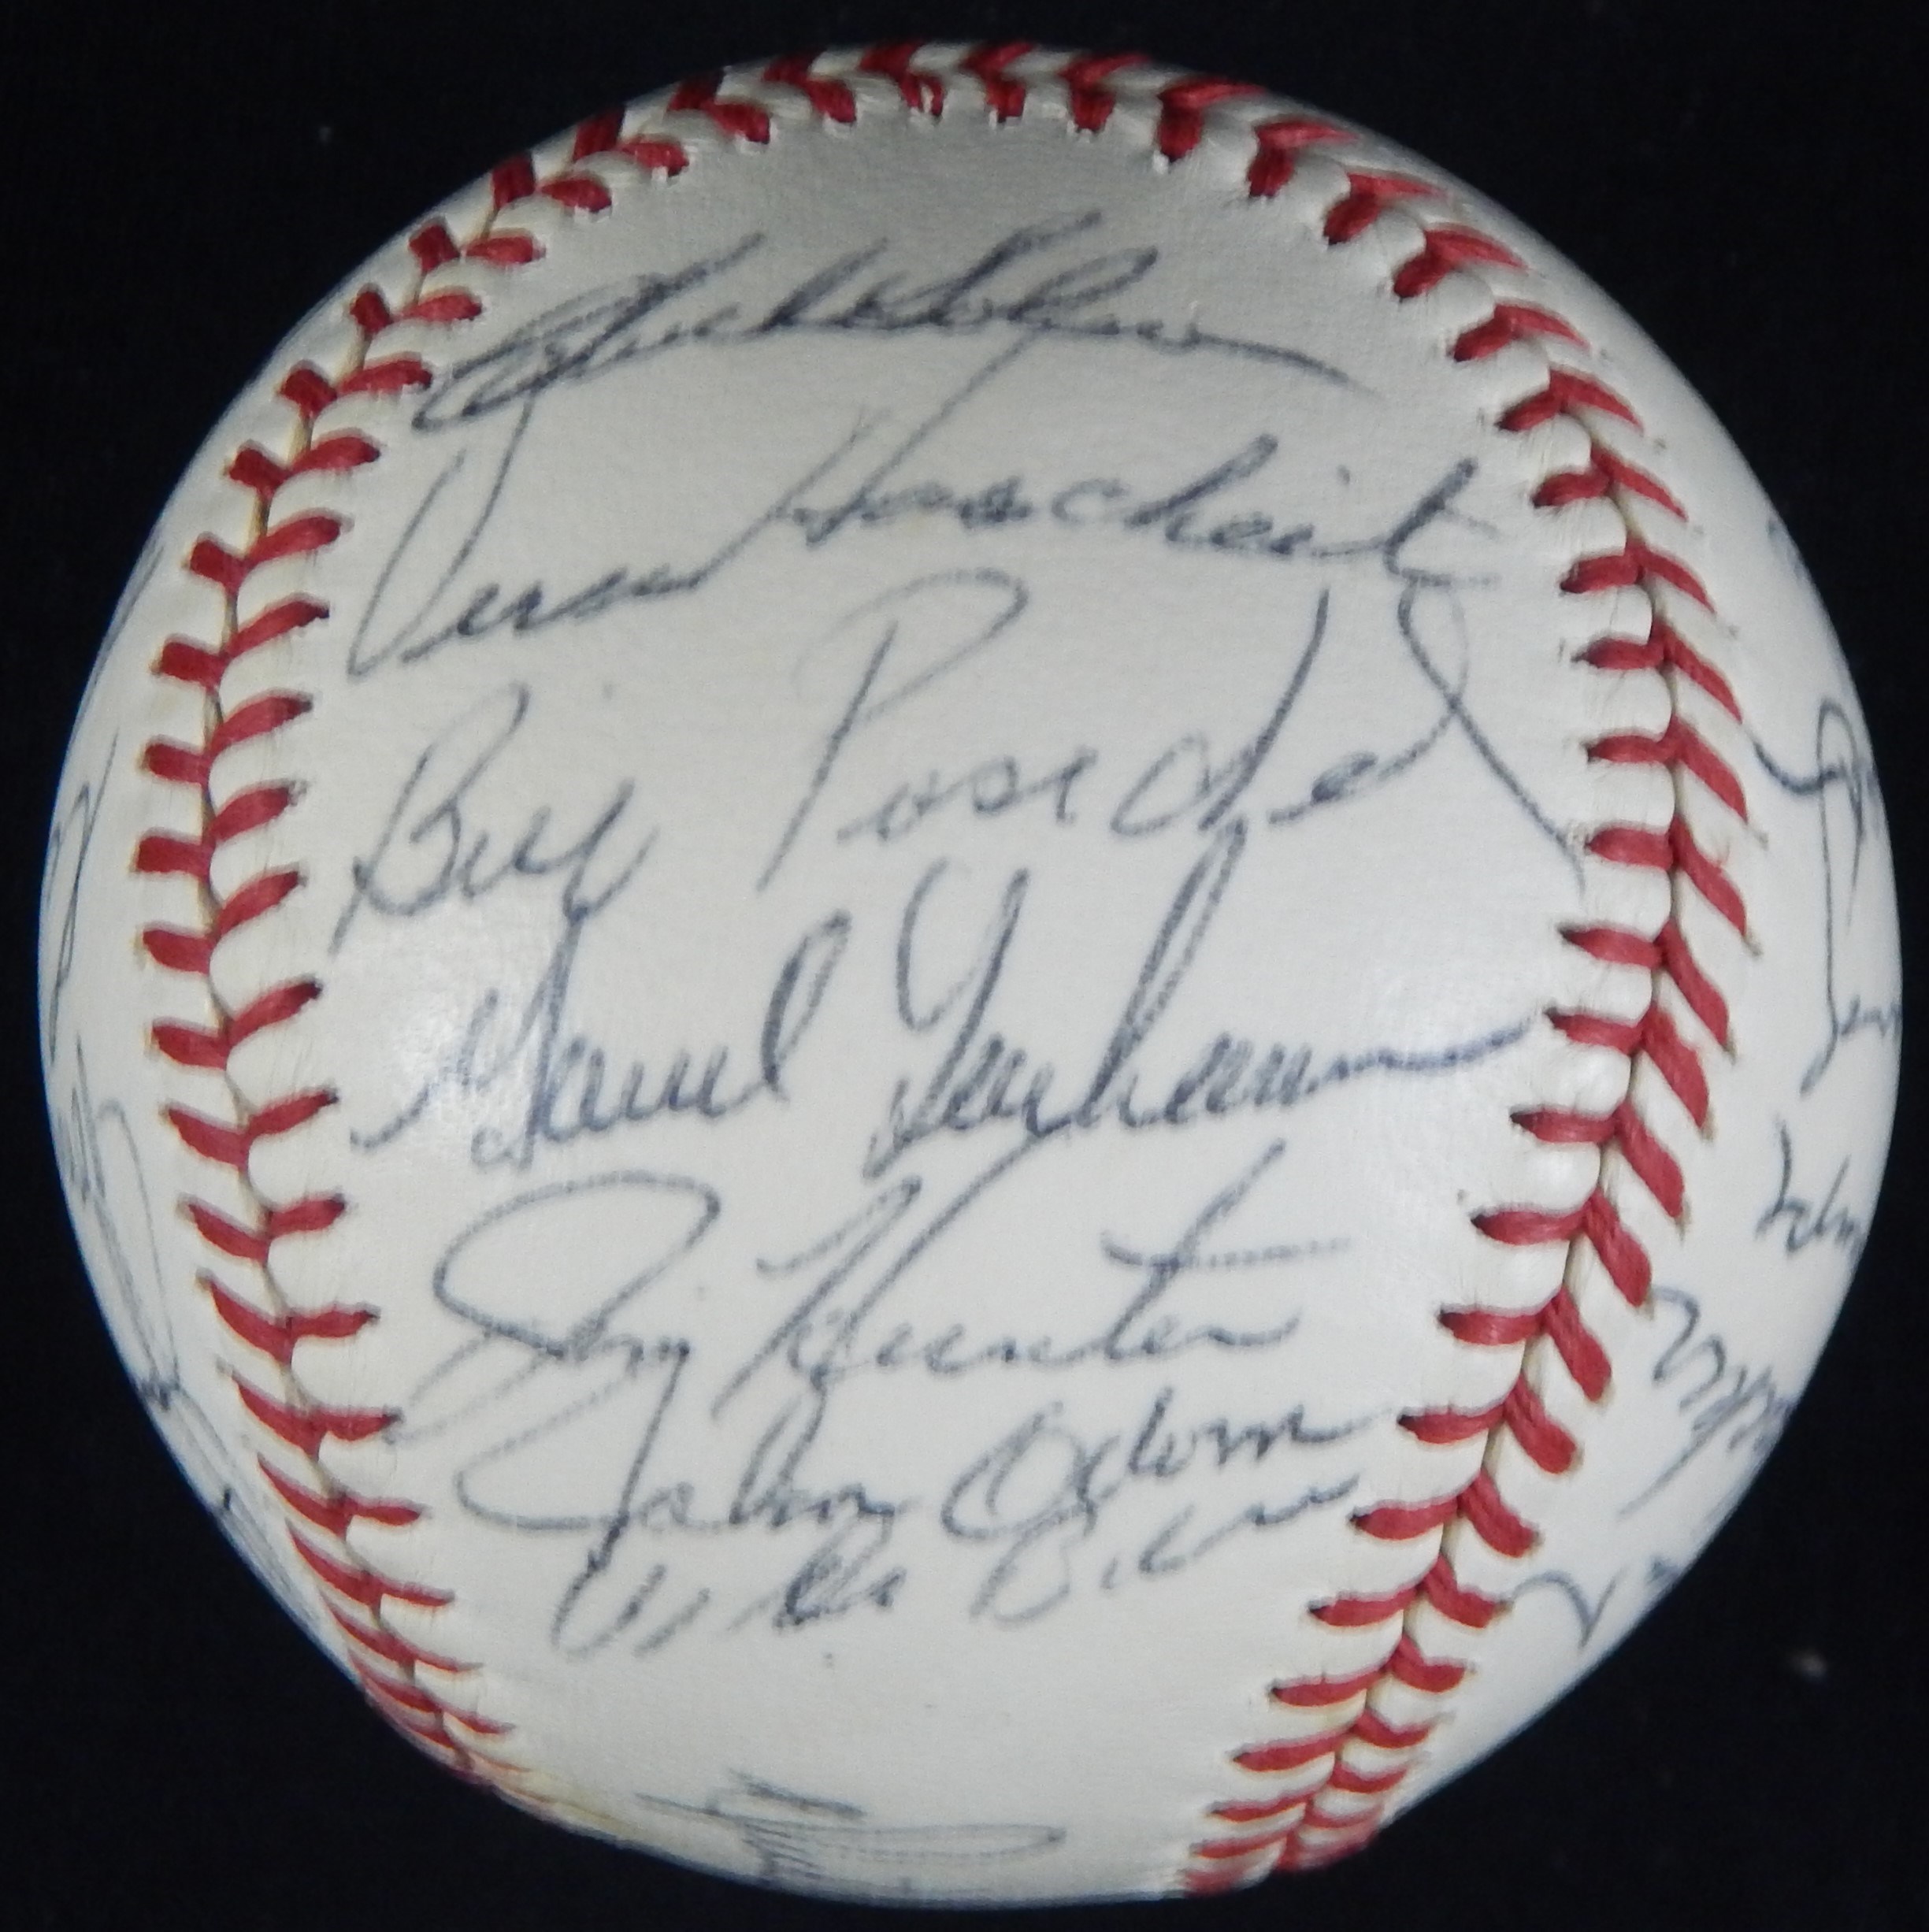 - 1971 Oakland A's Team Signed Baseball - JSA LOA